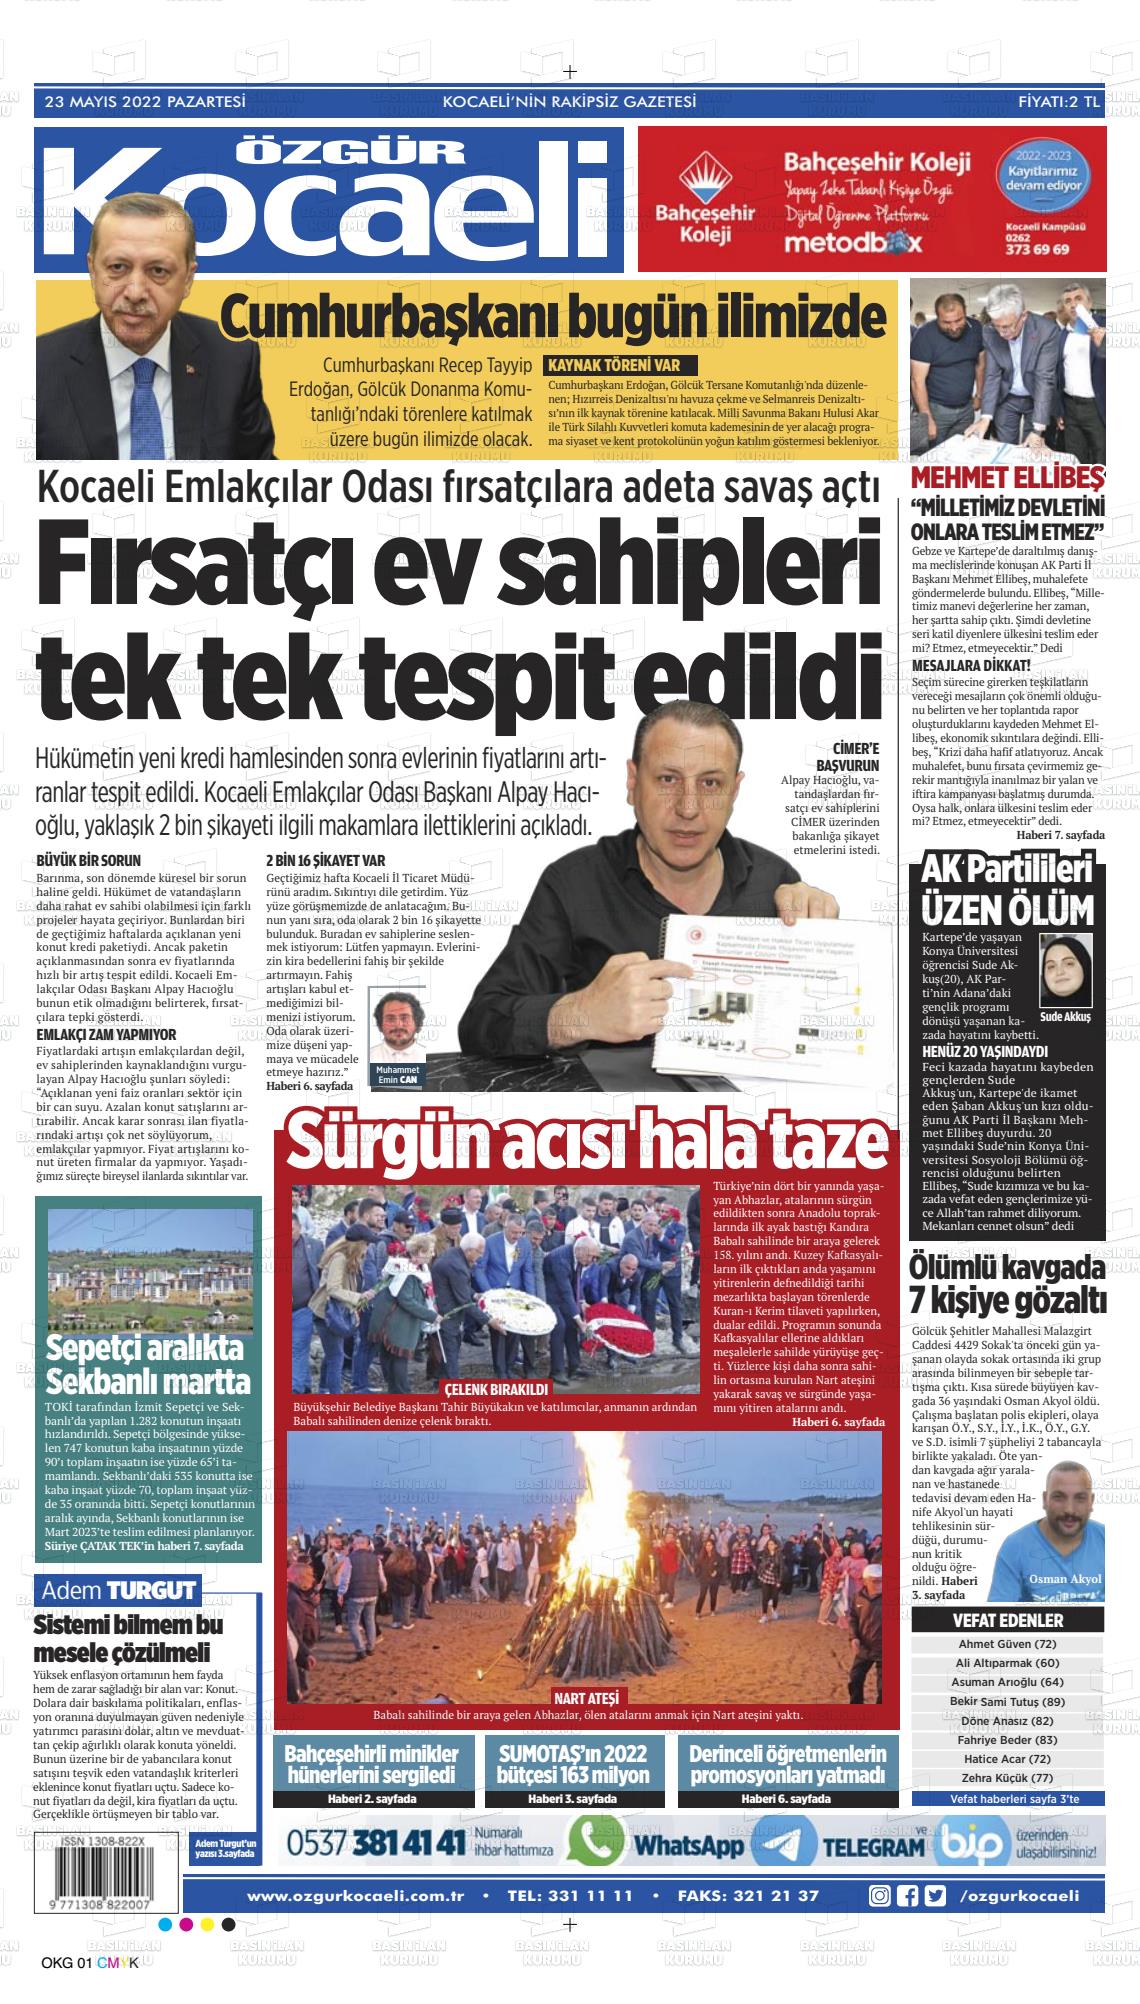 23 Mayıs 2022 Özgür Kocaeli Gazete Manşeti